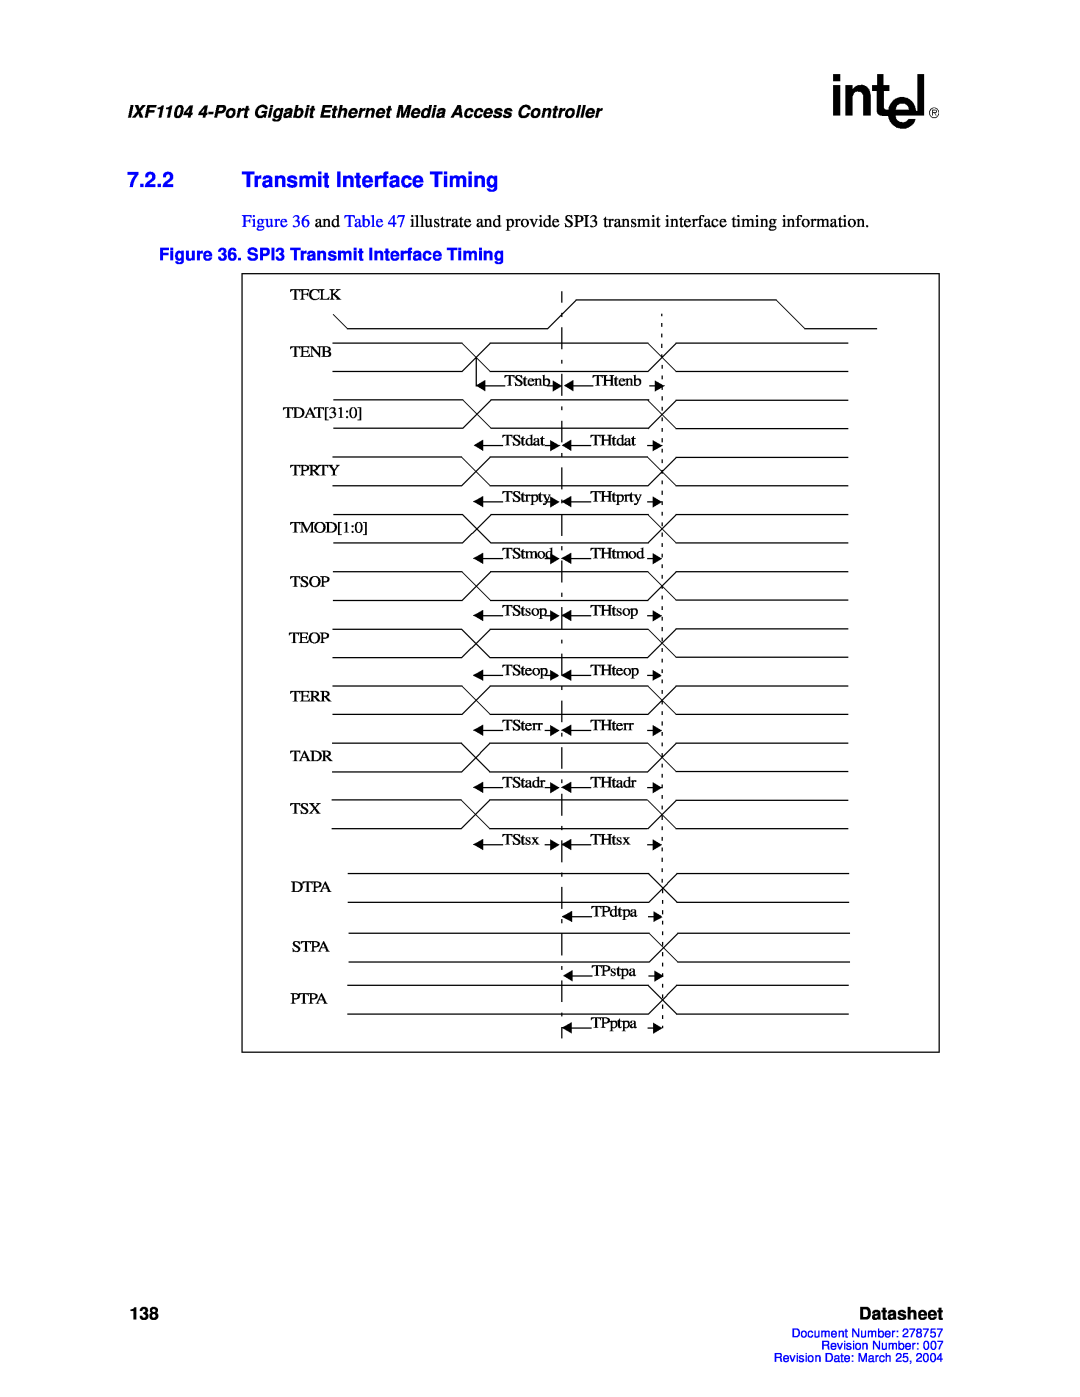 Intel IXF1104 manual 7.2.2Transmit Interface Timing, Datasheet 